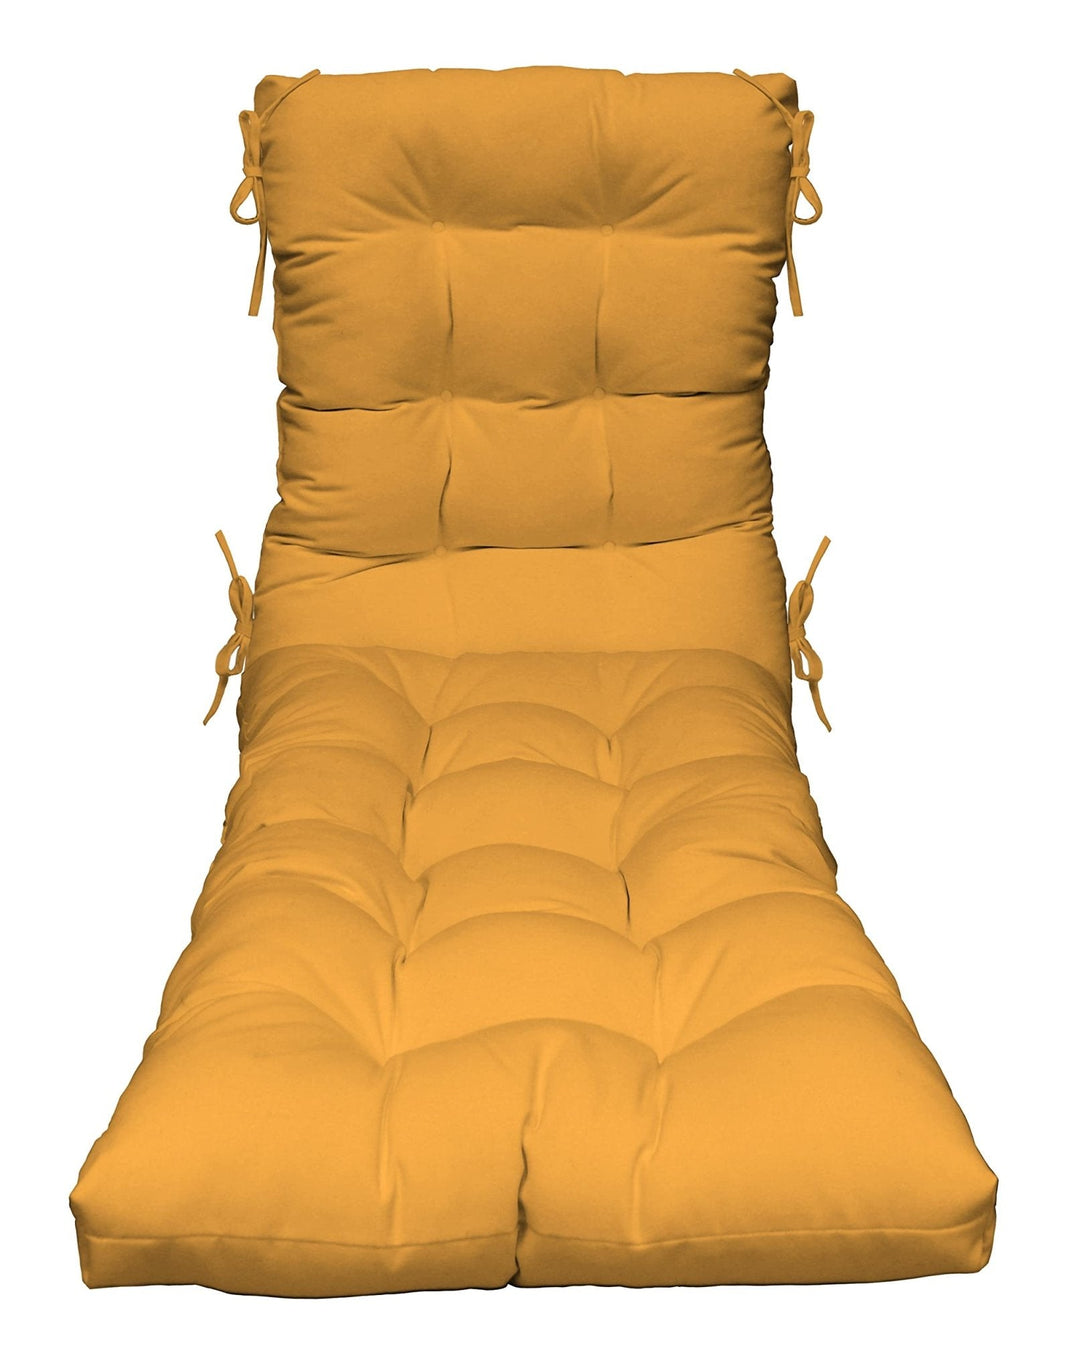 Chaise Lounge Chair Cushion | Tufted | 72" H x 22" W | Sunbrella Canvas Buttercup Yellow - RSH Decor